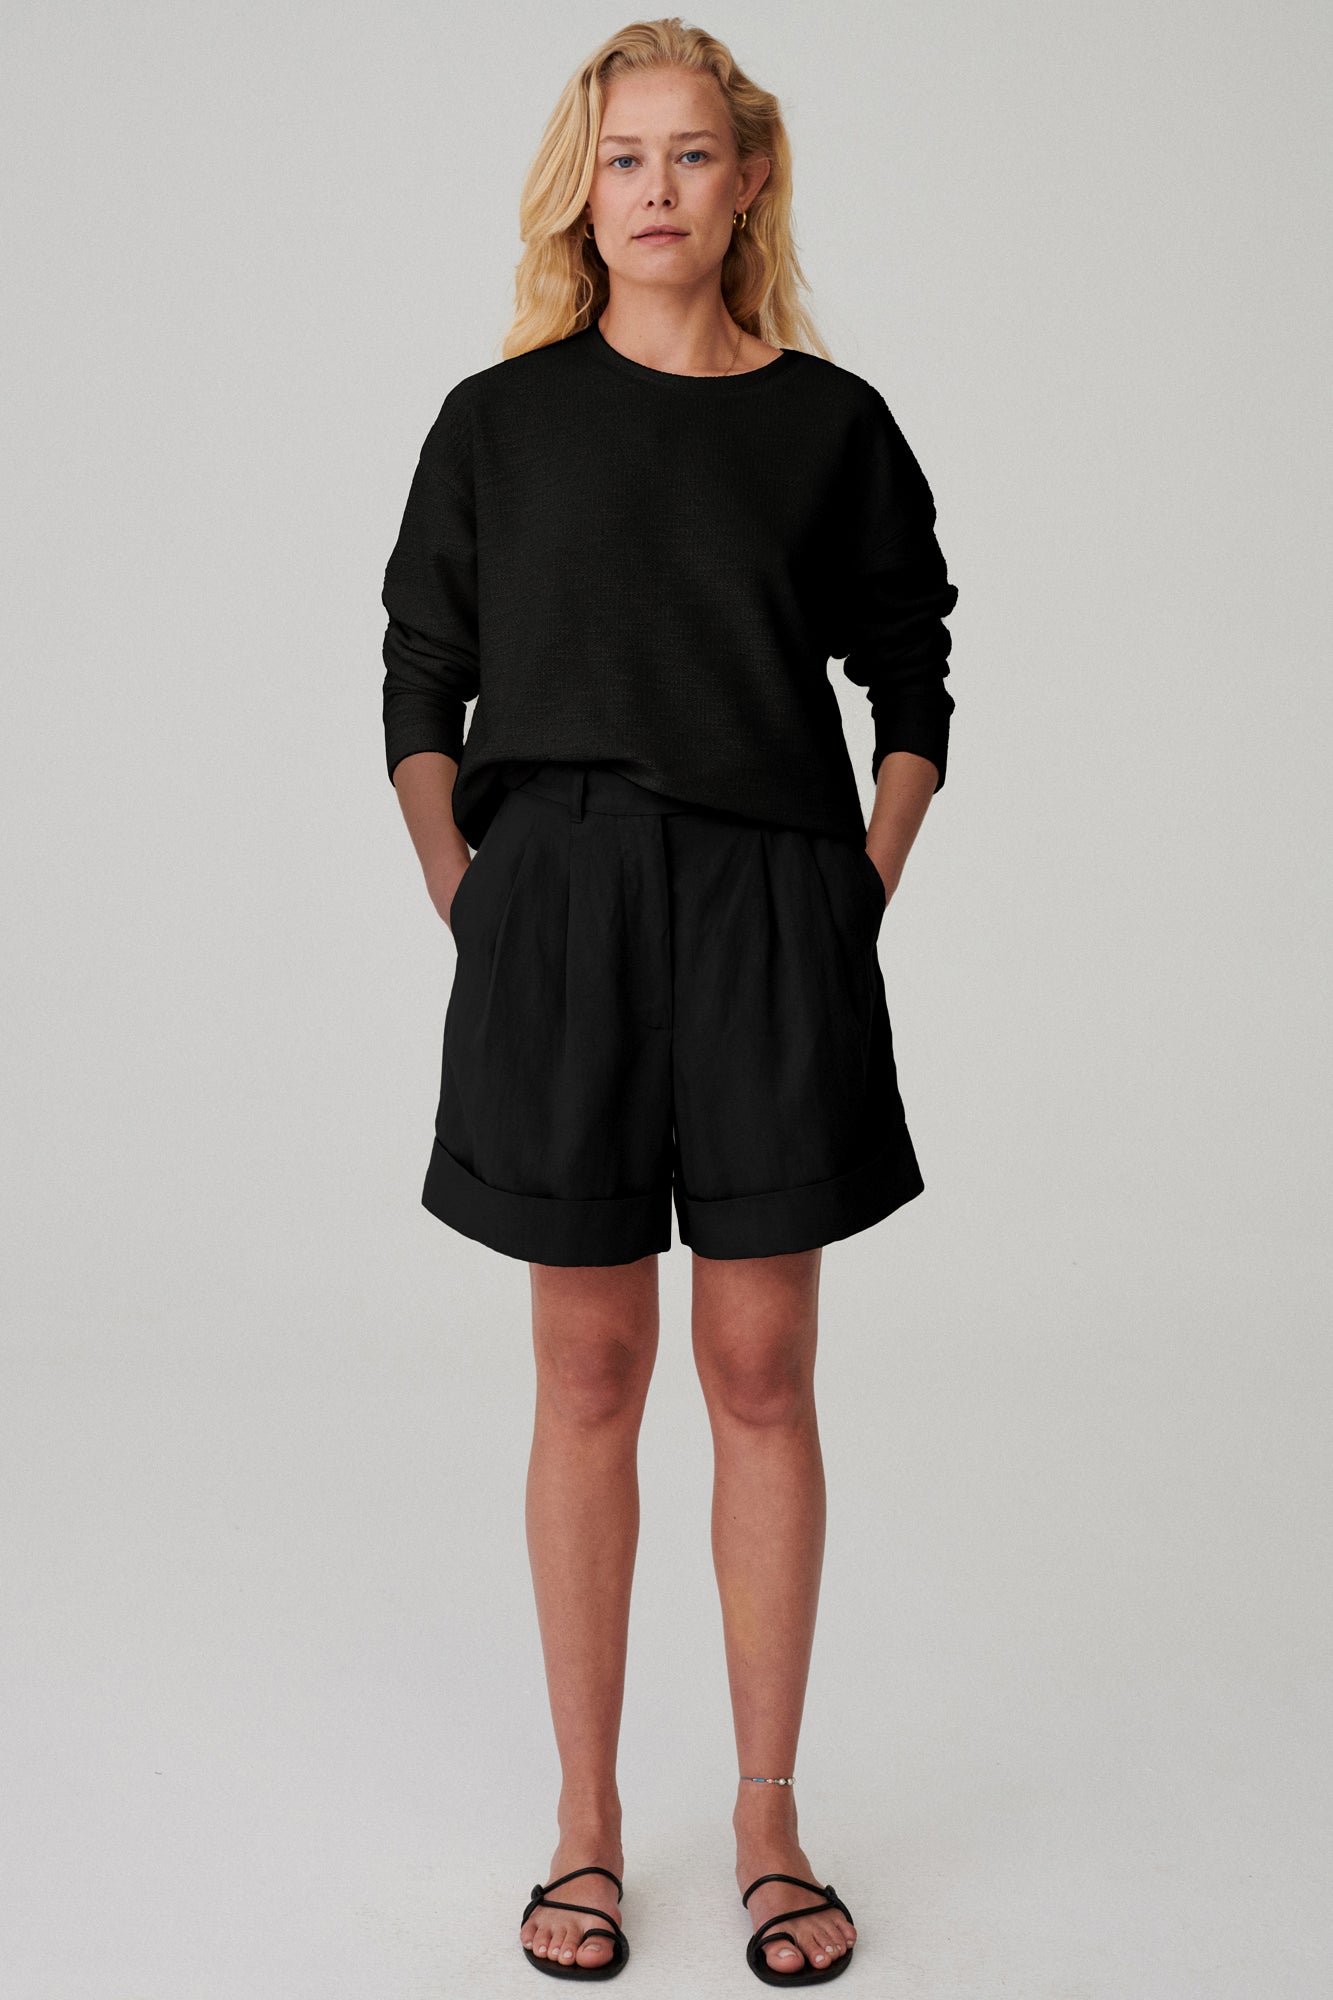 Bluza z bawełny / 14 / 04 / onyx black* ?Modelka ma 173cm wzrostu i nosi rozmiar XS/S? |